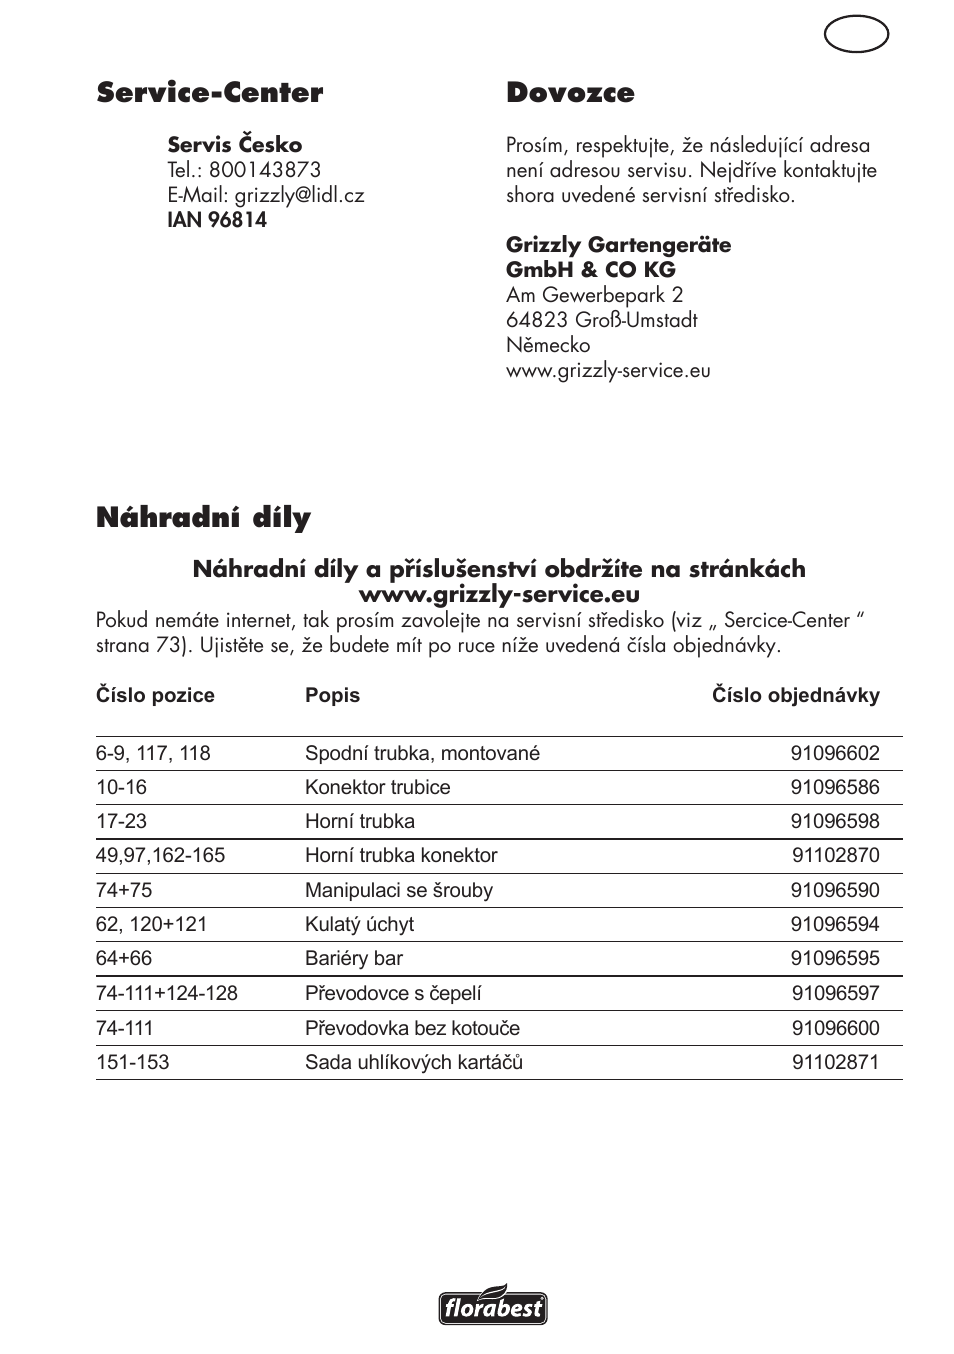 Cz service-center, Dovozce, Náhradní díly | Florabest FHL 900 C4 User  Manual | Page 73 / 112